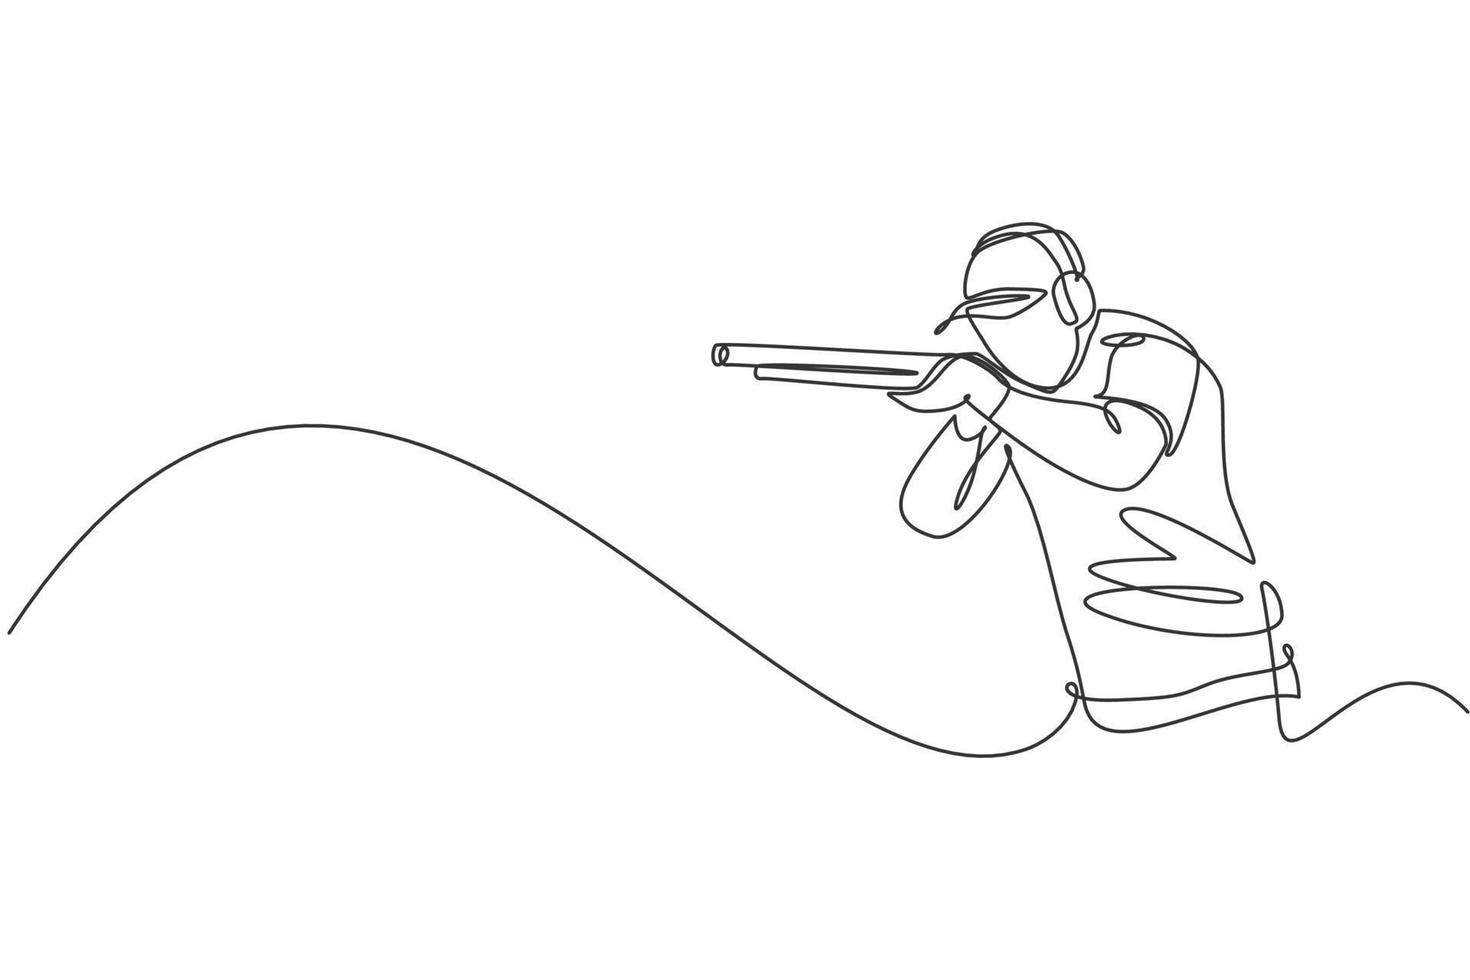 un dibujo de línea continua de un joven en la práctica del campo de entrenamiento de tiro para competir con escopeta de rifle. concepto de deporte de tiro al aire libre. Ilustración de vector de diseño de dibujo de línea única dinámica